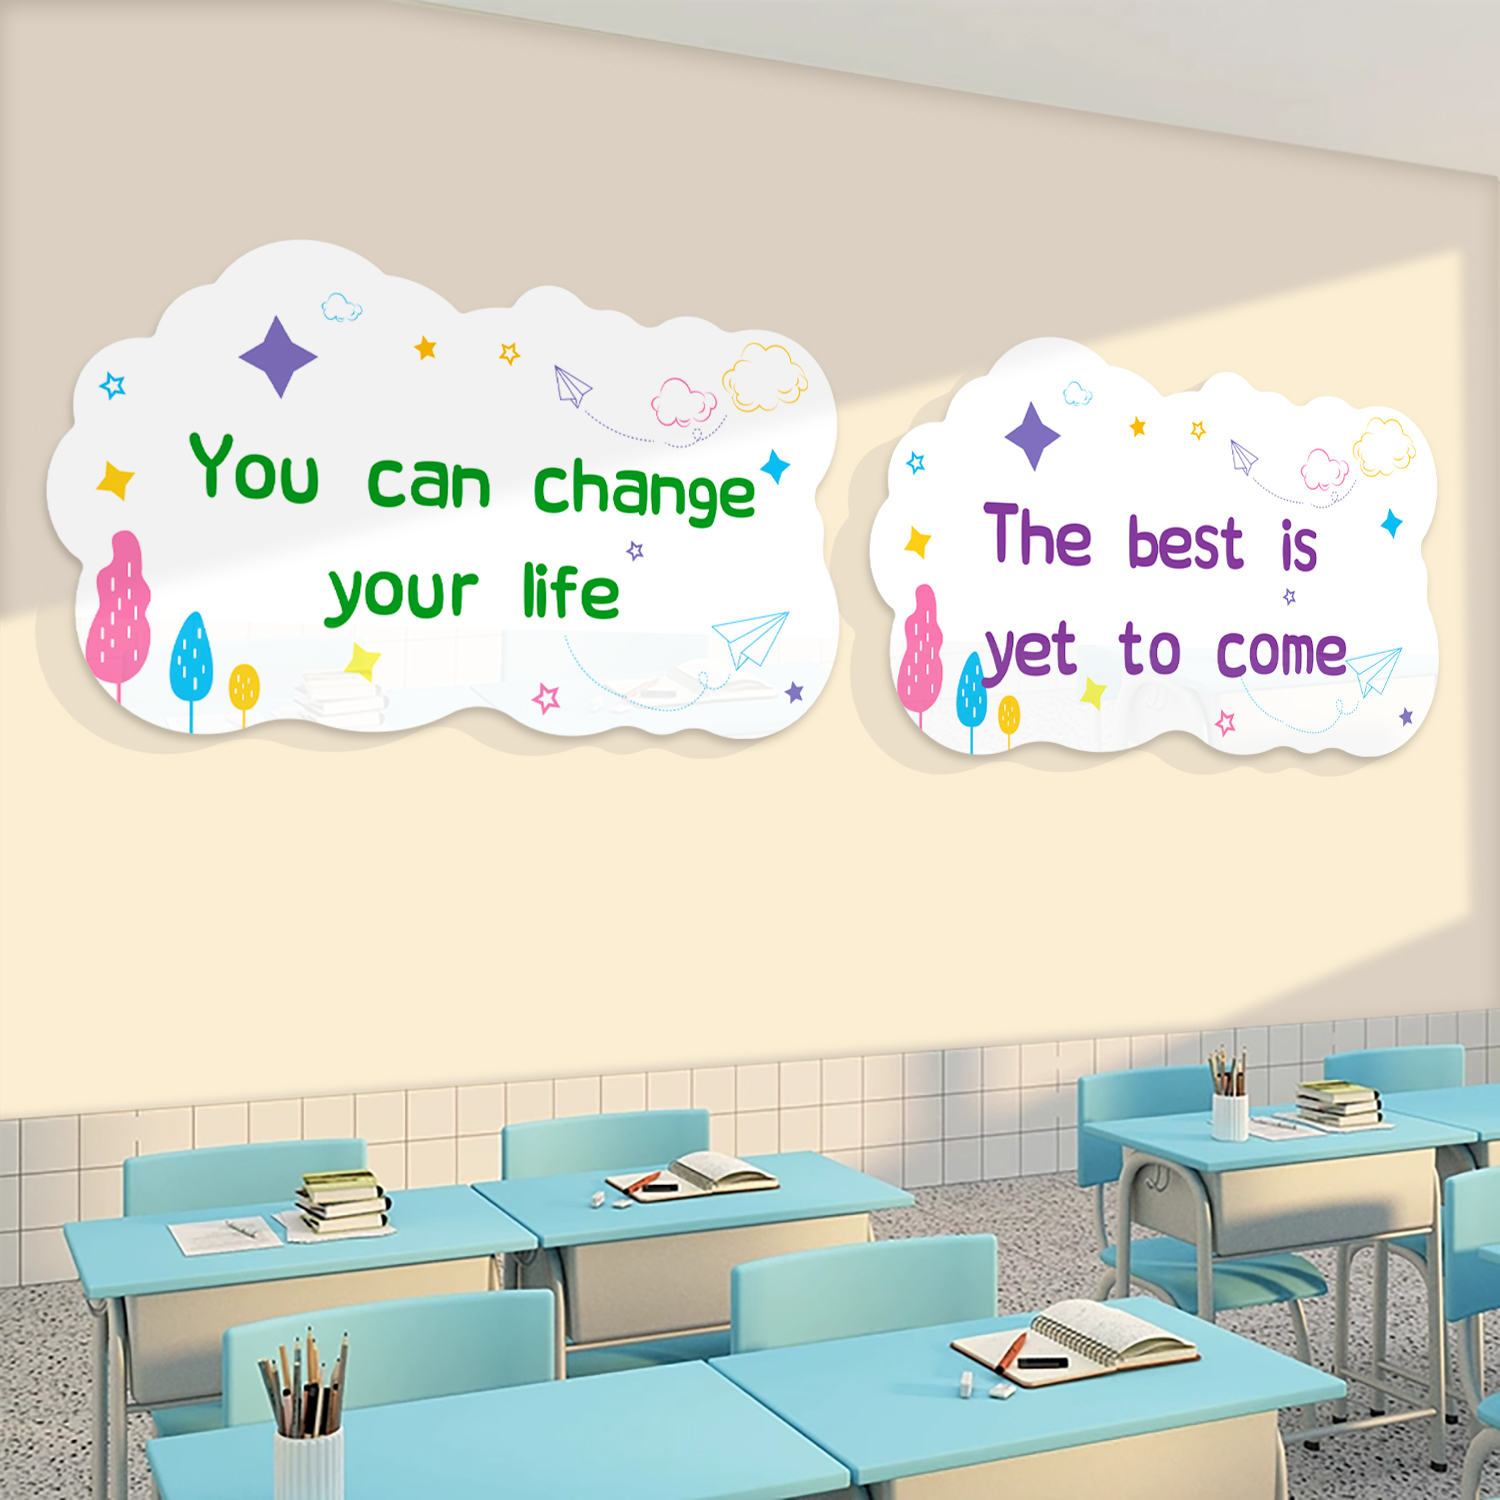 幼儿园墙贴面英语角教室装饰环创主题成品托管班背景文化布置材料